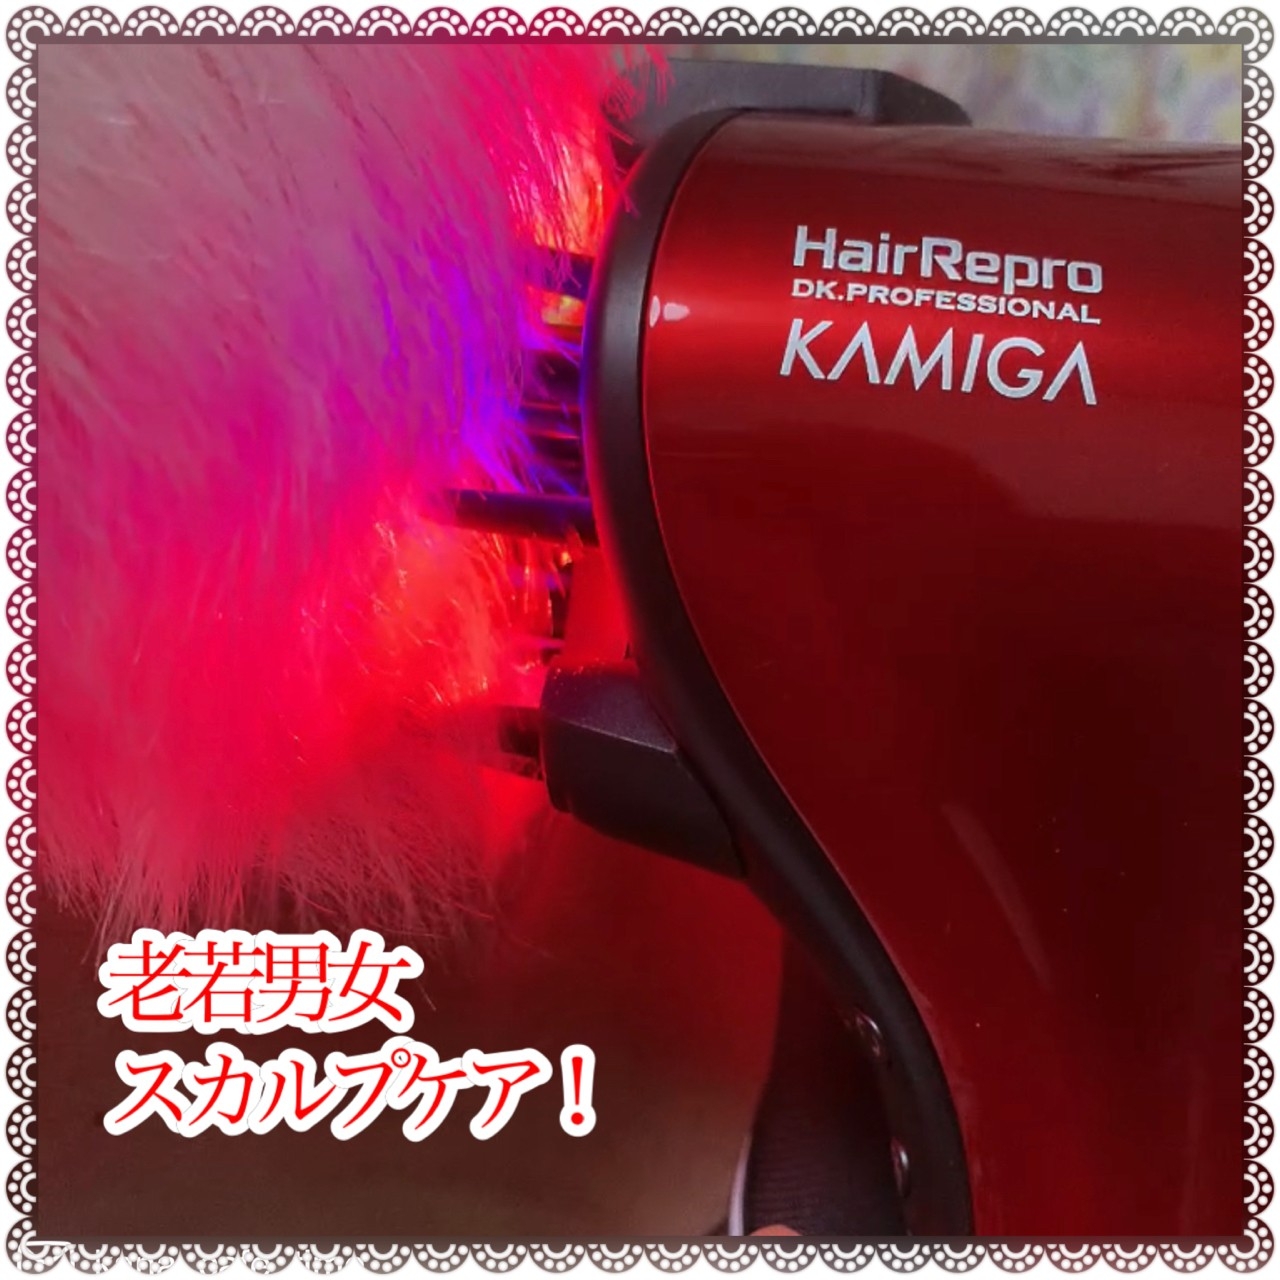 Hair Repro(ヘアリプロ) N-LED Sonic KAMIGA AD-HR03の良い点・メリットに関するkana_cafe_timeさんの口コミ画像2